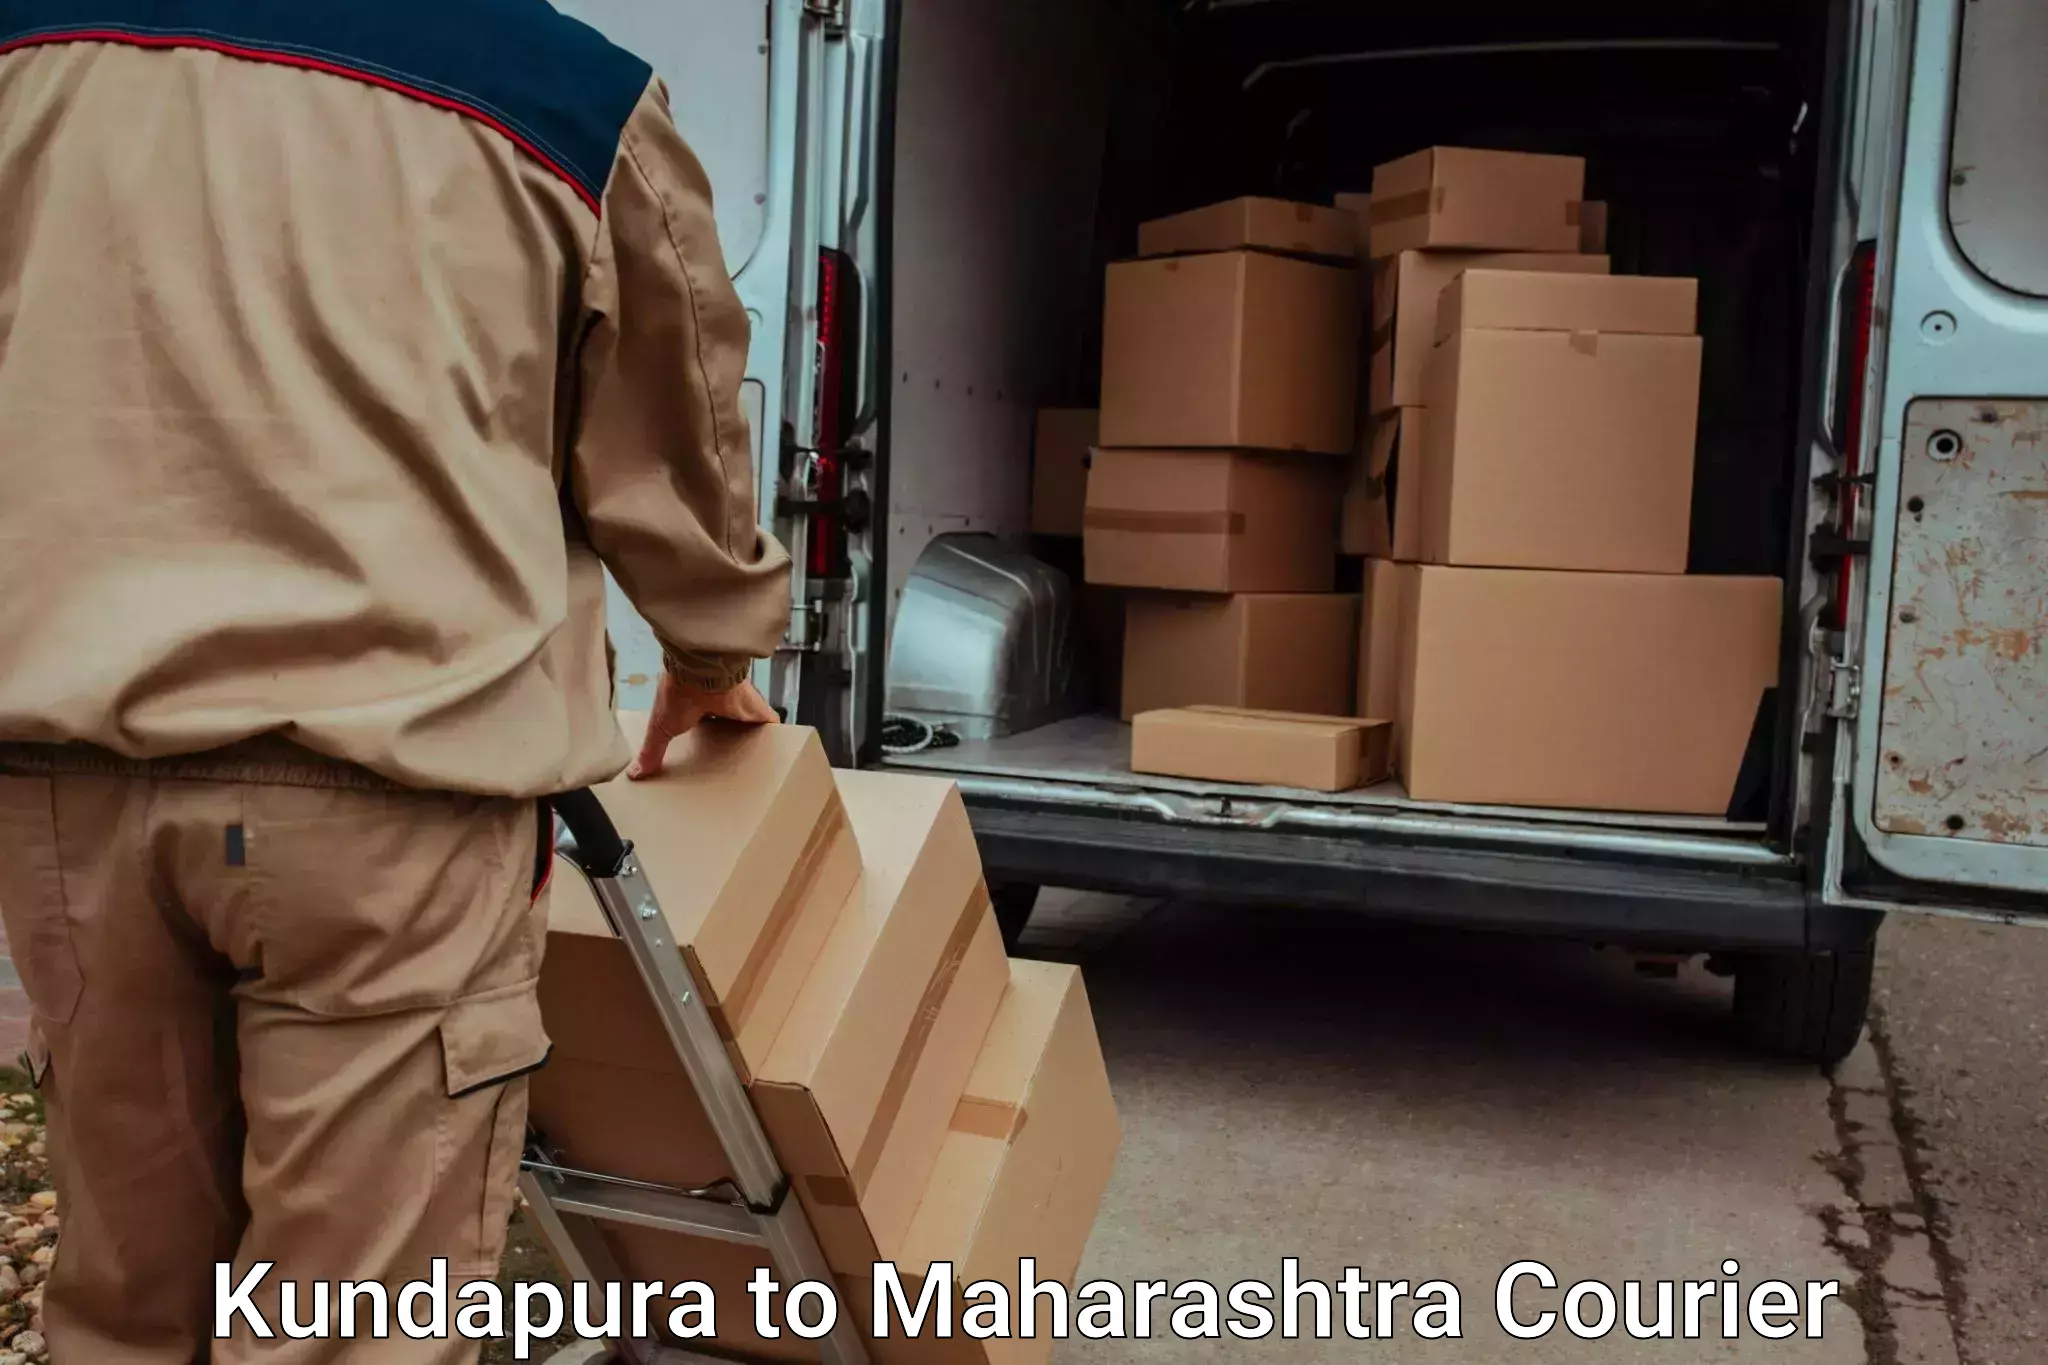 Door-to-door baggage service Kundapura to Pandharpur